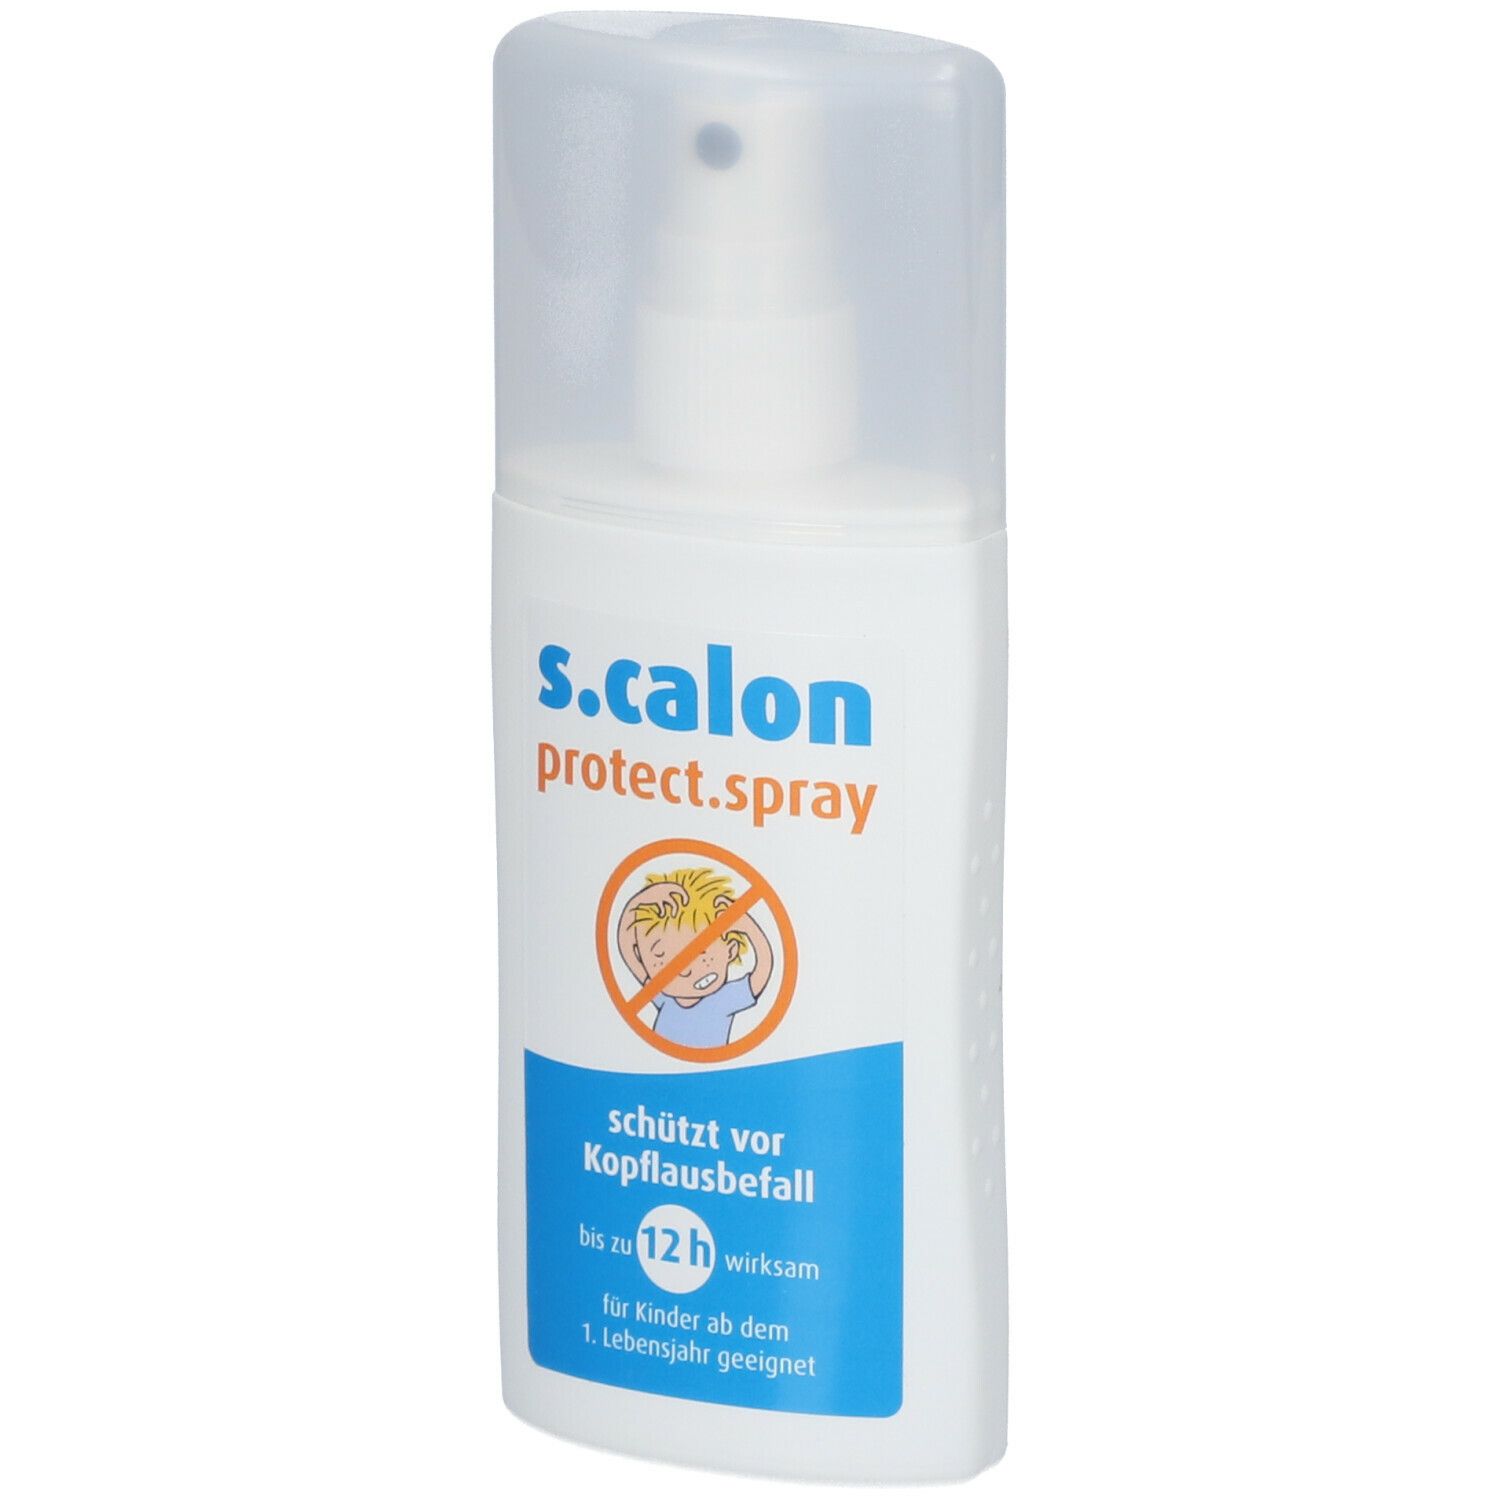 S.Calon PROTECT Spray